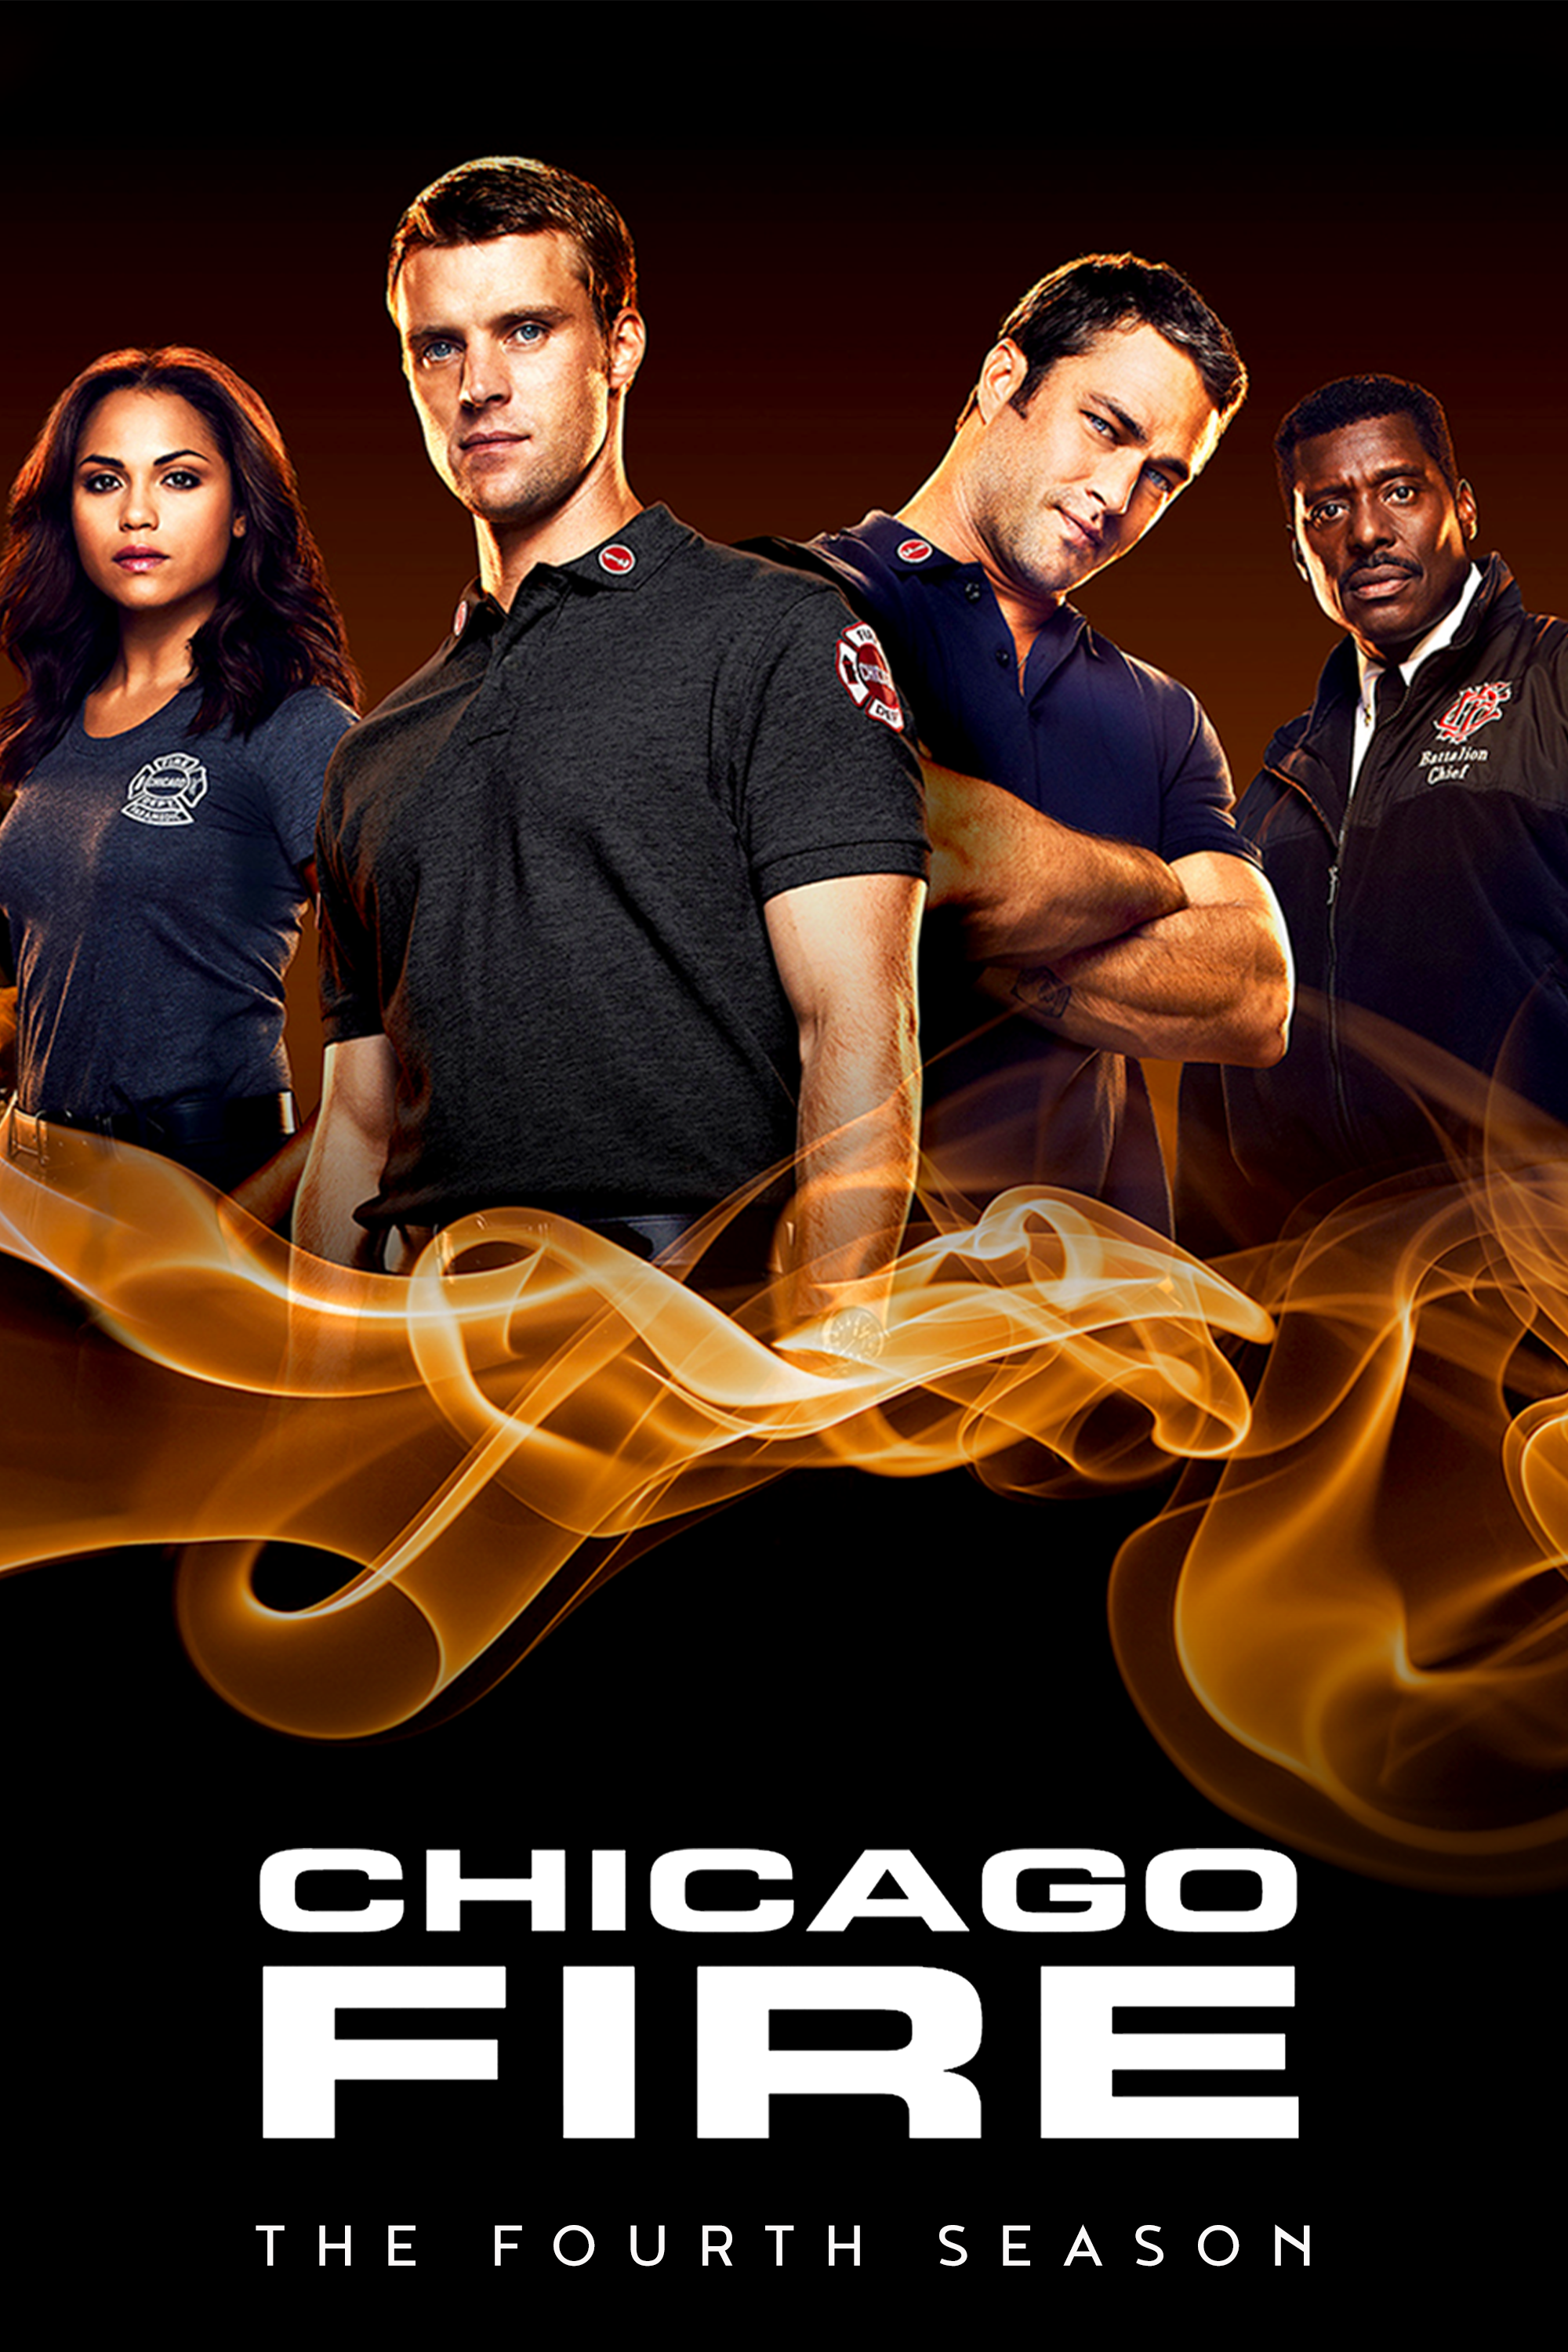 ดูหนังออนไลน์ฟรี Chicago Fire Season 4 EP.20 ชิคาโก้ ไฟร์ หน่วยดับเพลิงท้านรก ซีซั่นที่ 4 ตอนที่ 20